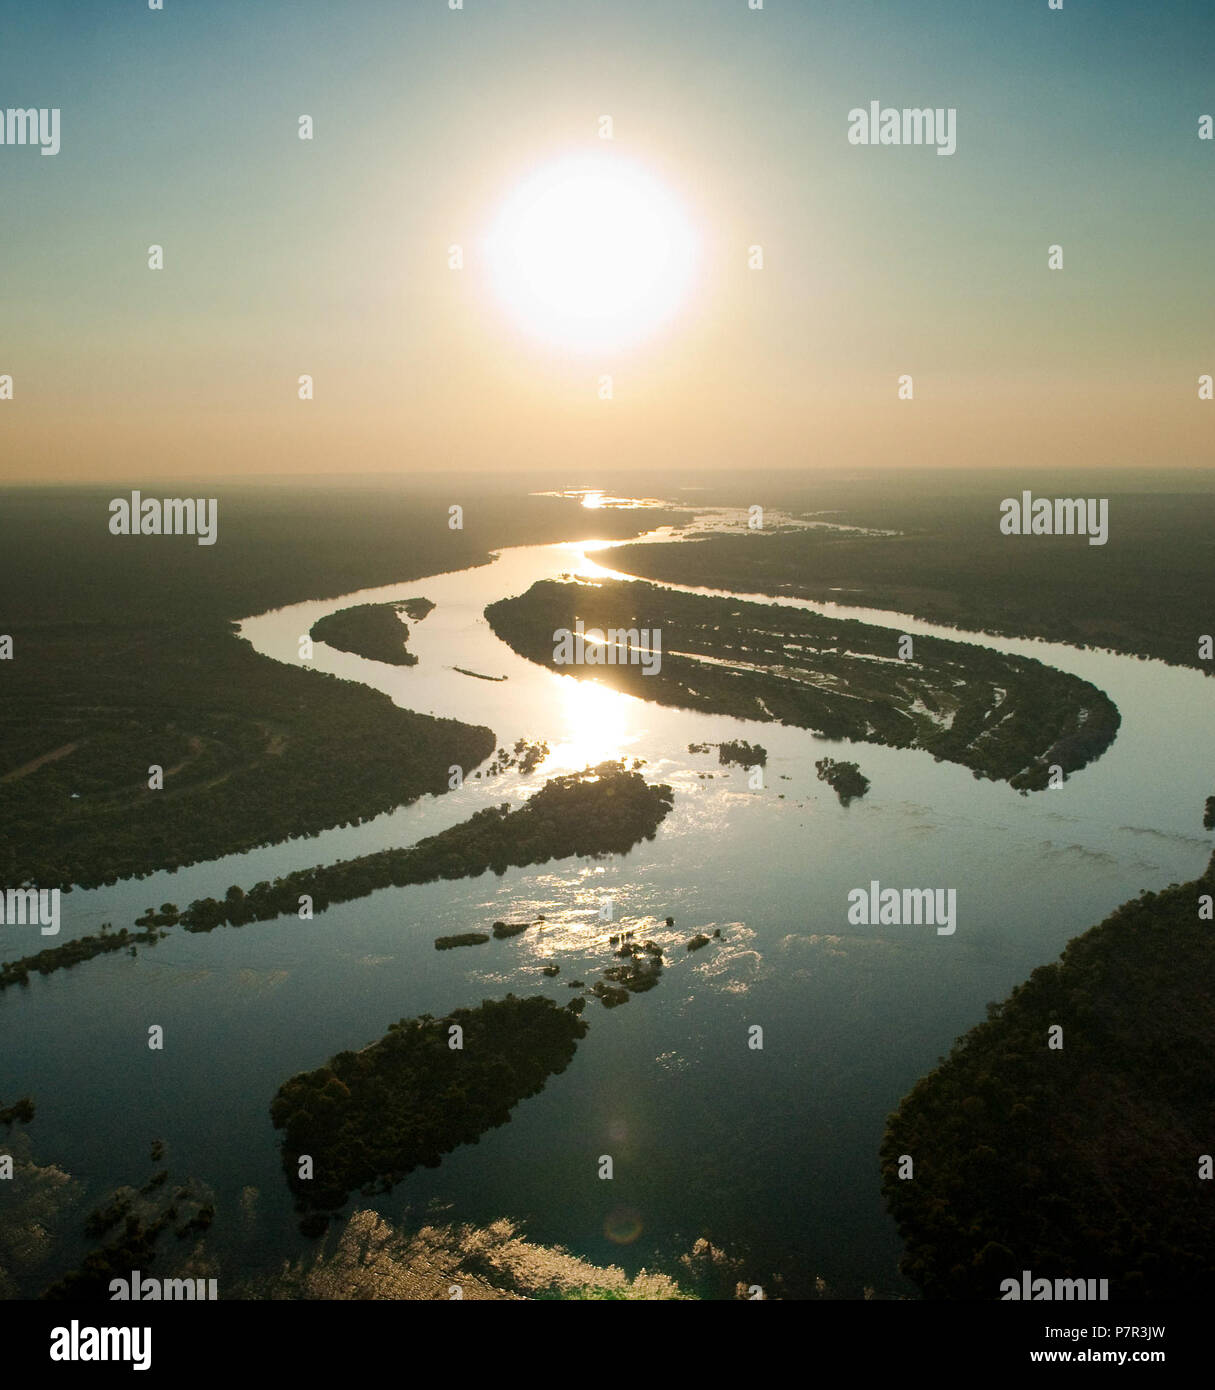 Zambezi River seen from the air, Zambia Stock Photo